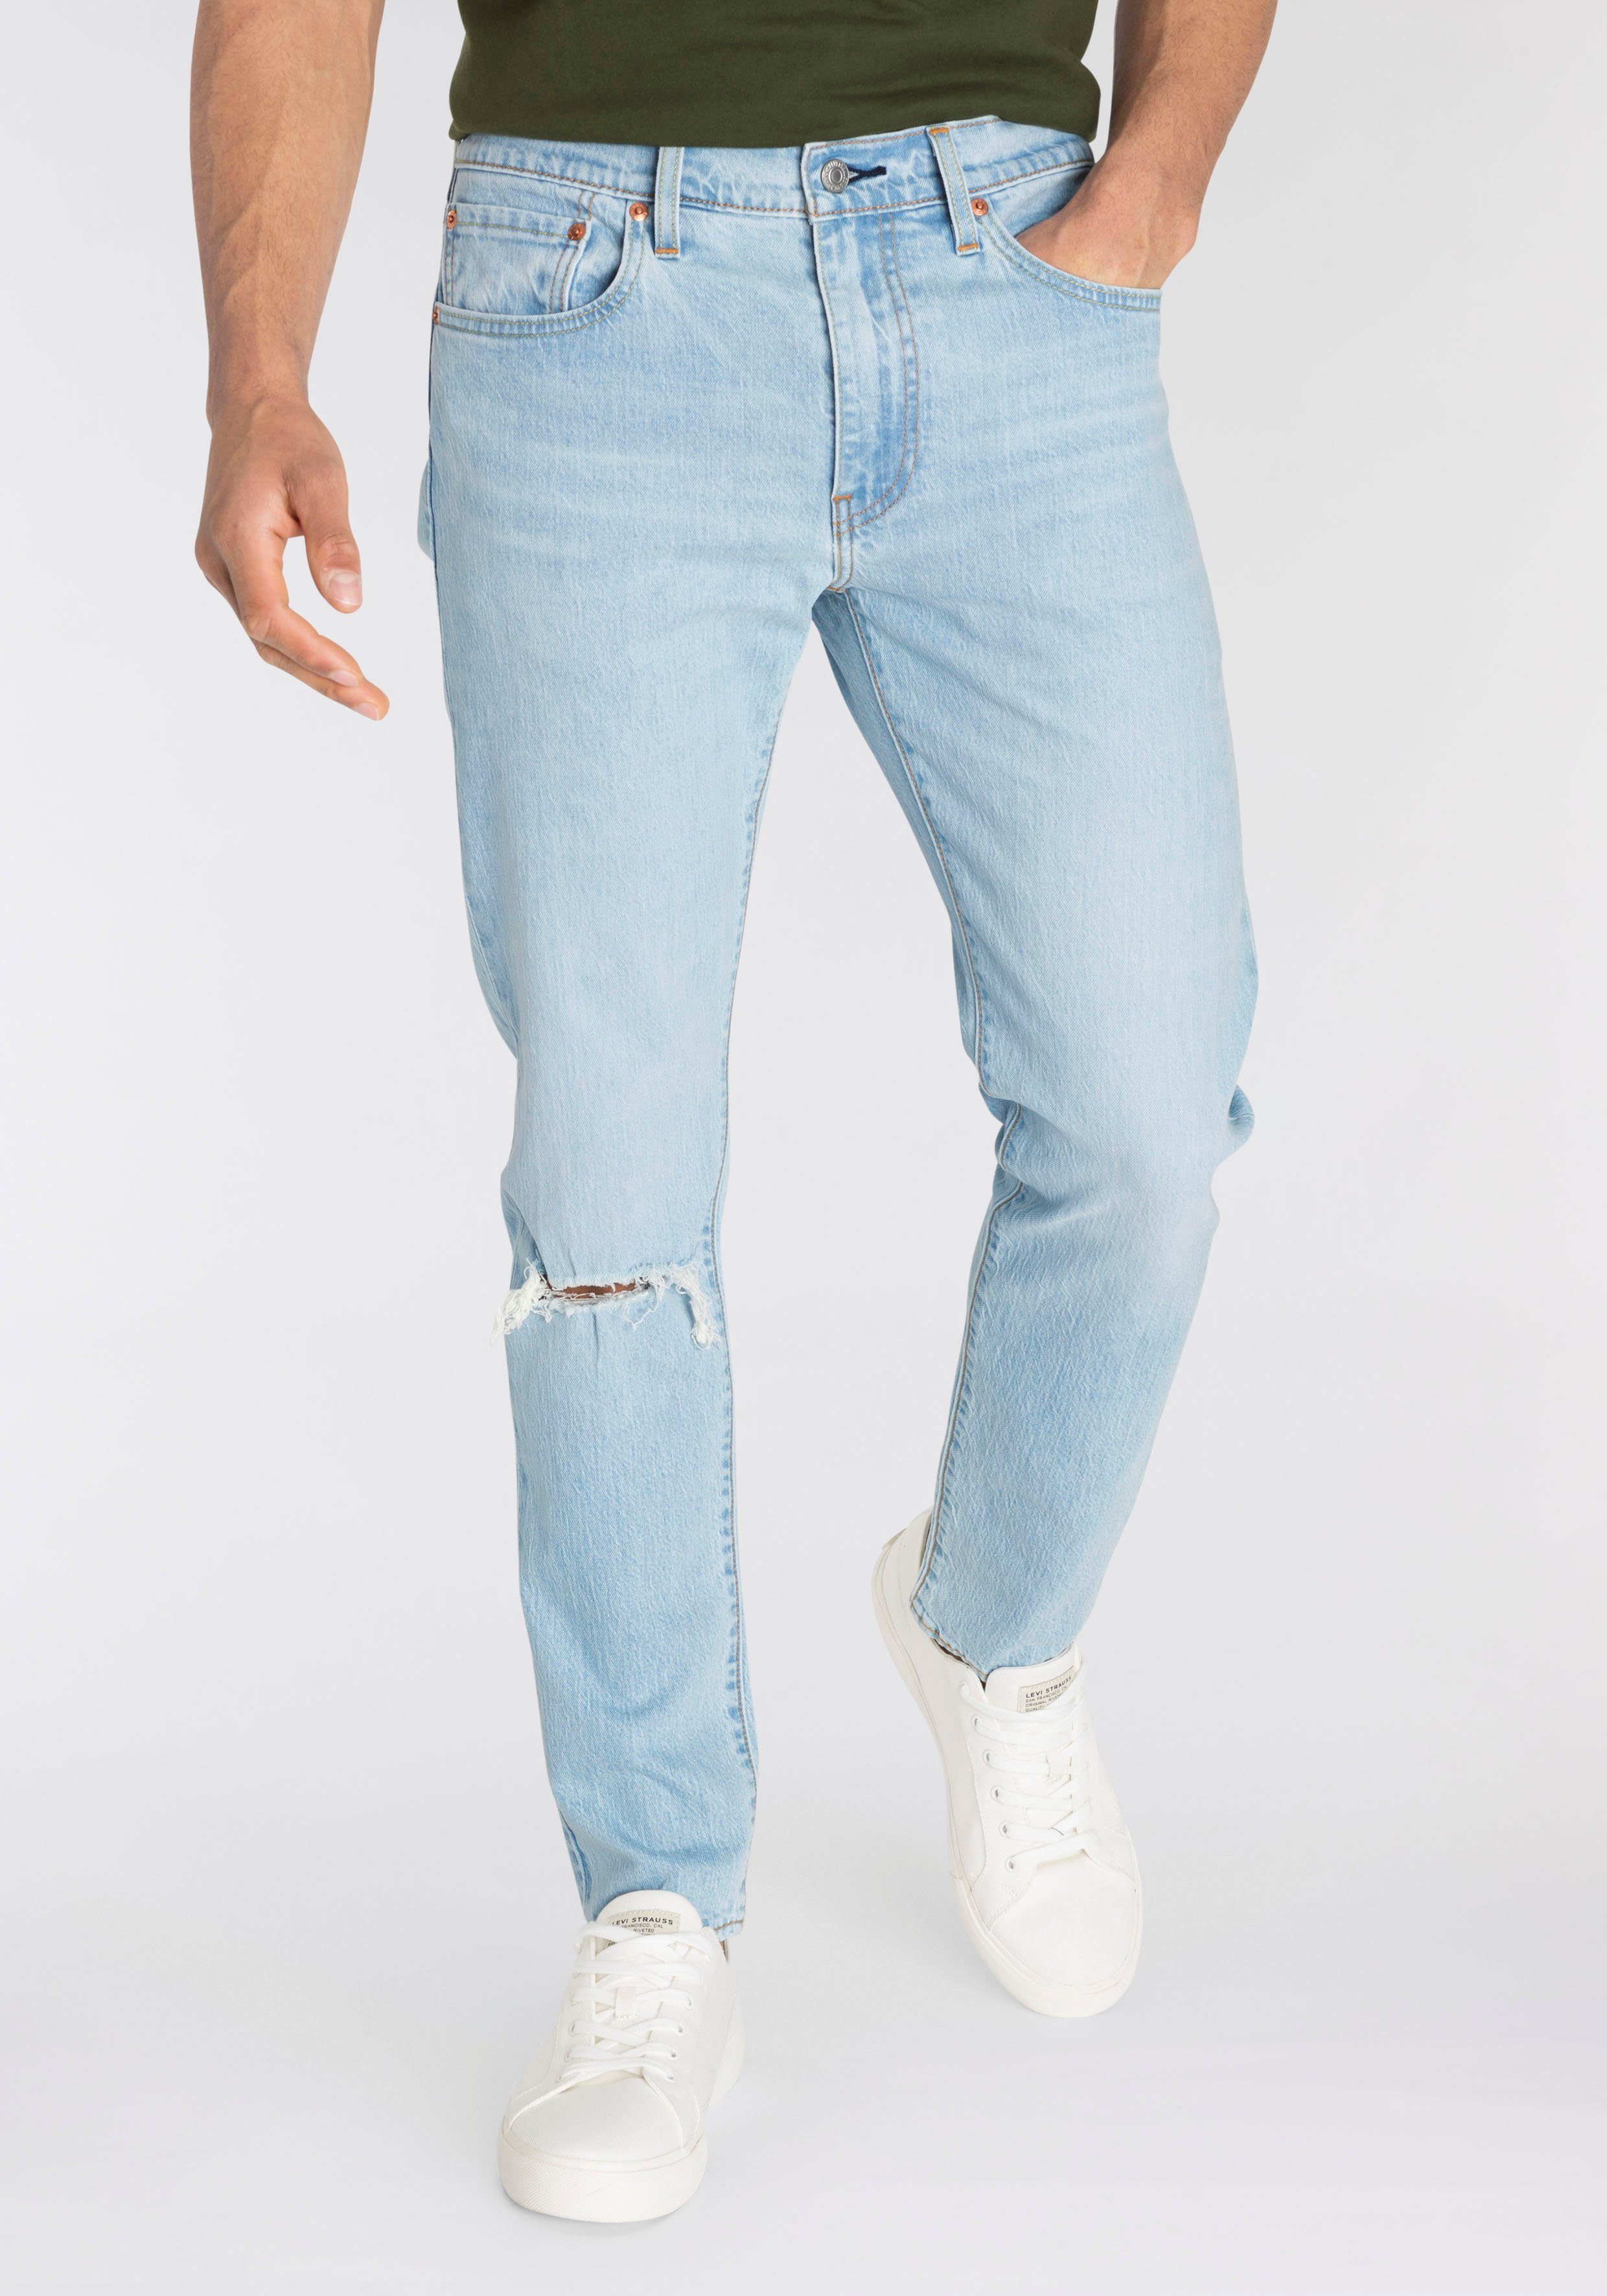 wolf Afsnijden spier Levi's® Tapered jeans 512 Slim Taper Fit met merklabel makkelijk besteld |  OTTO